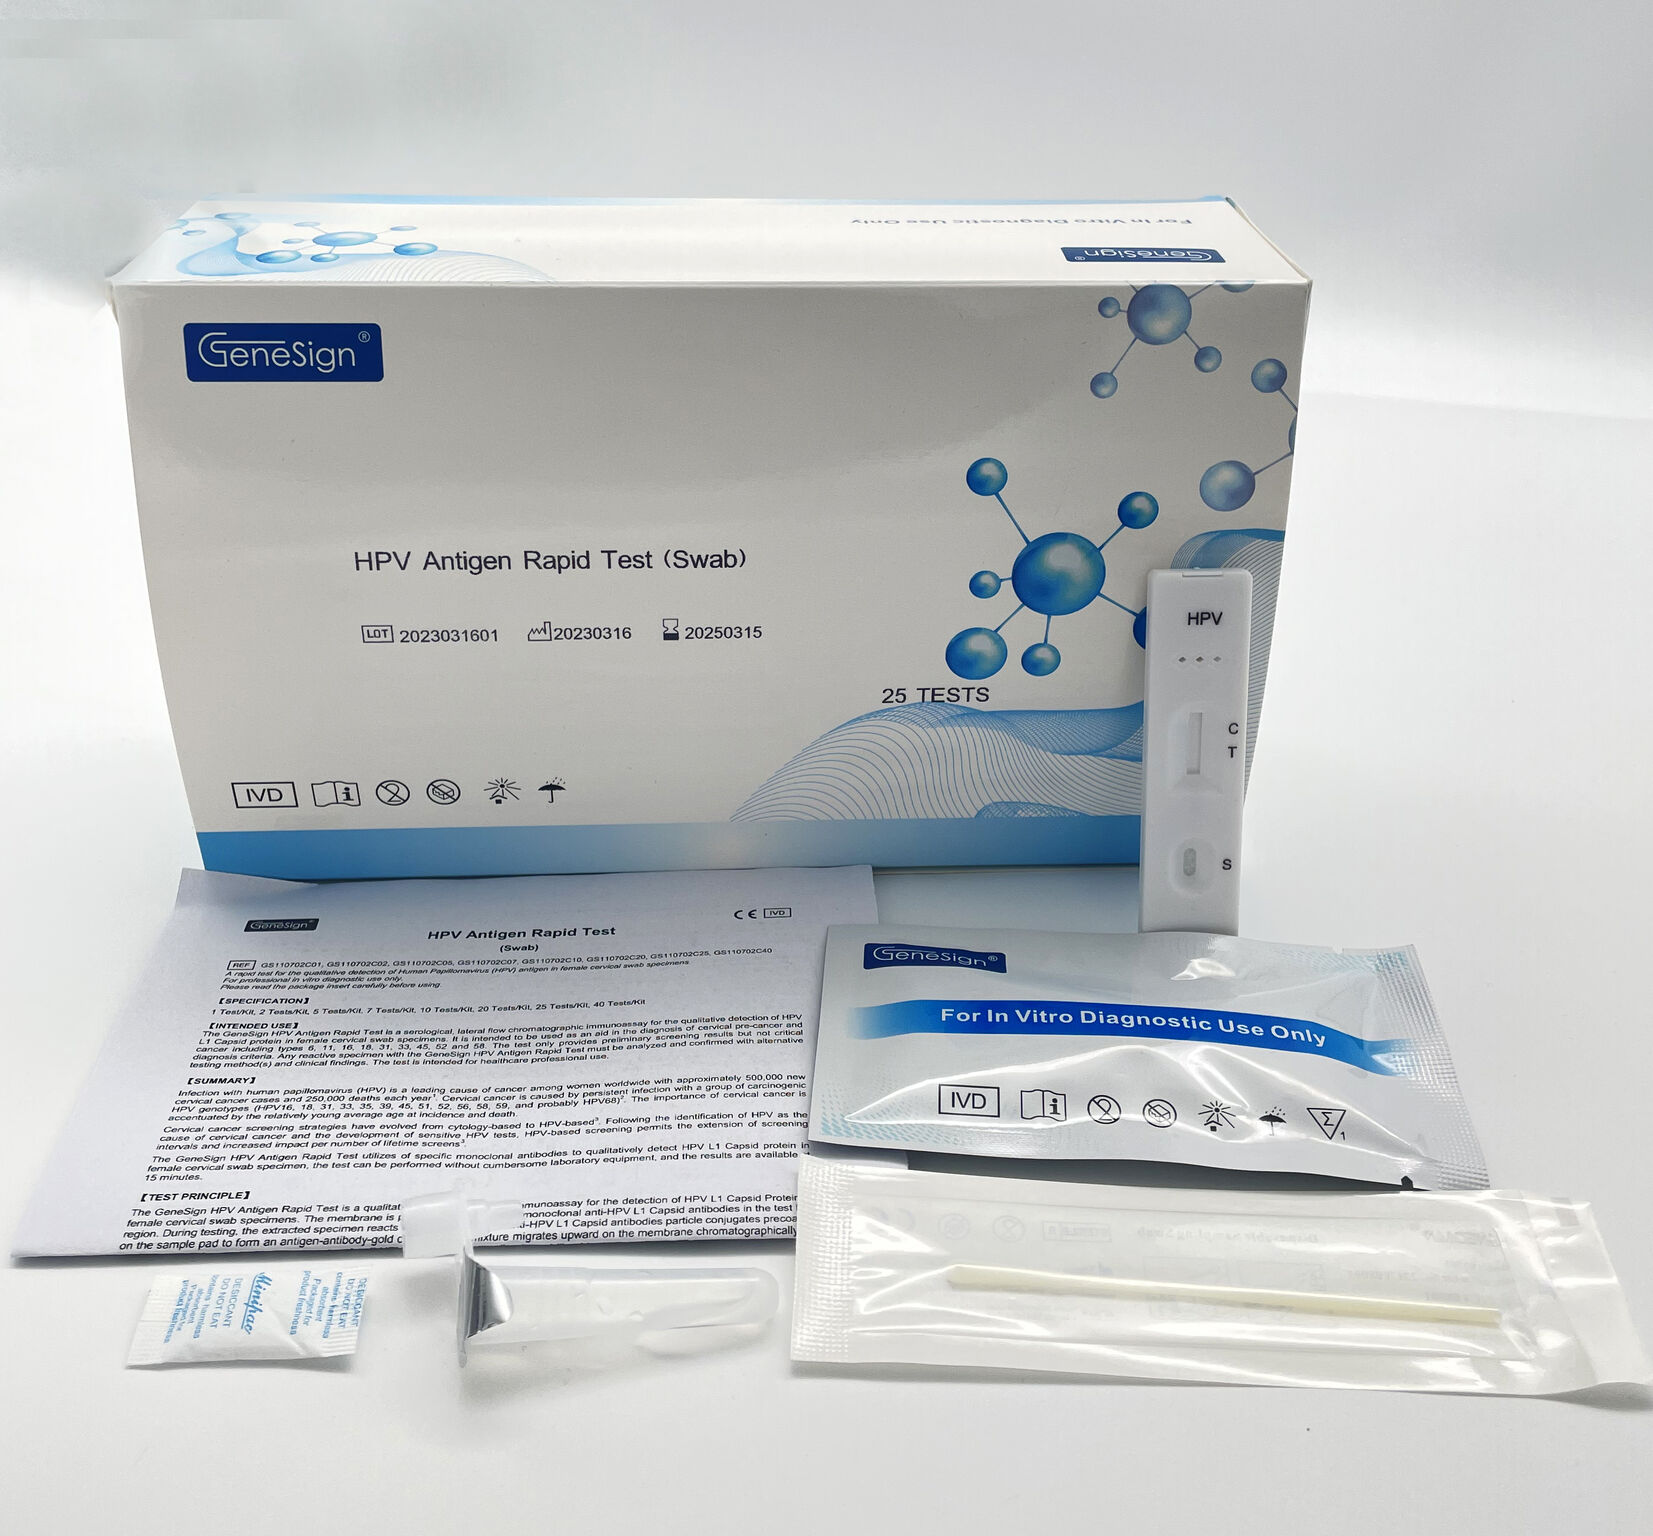 HPV Antigen Rapid Test